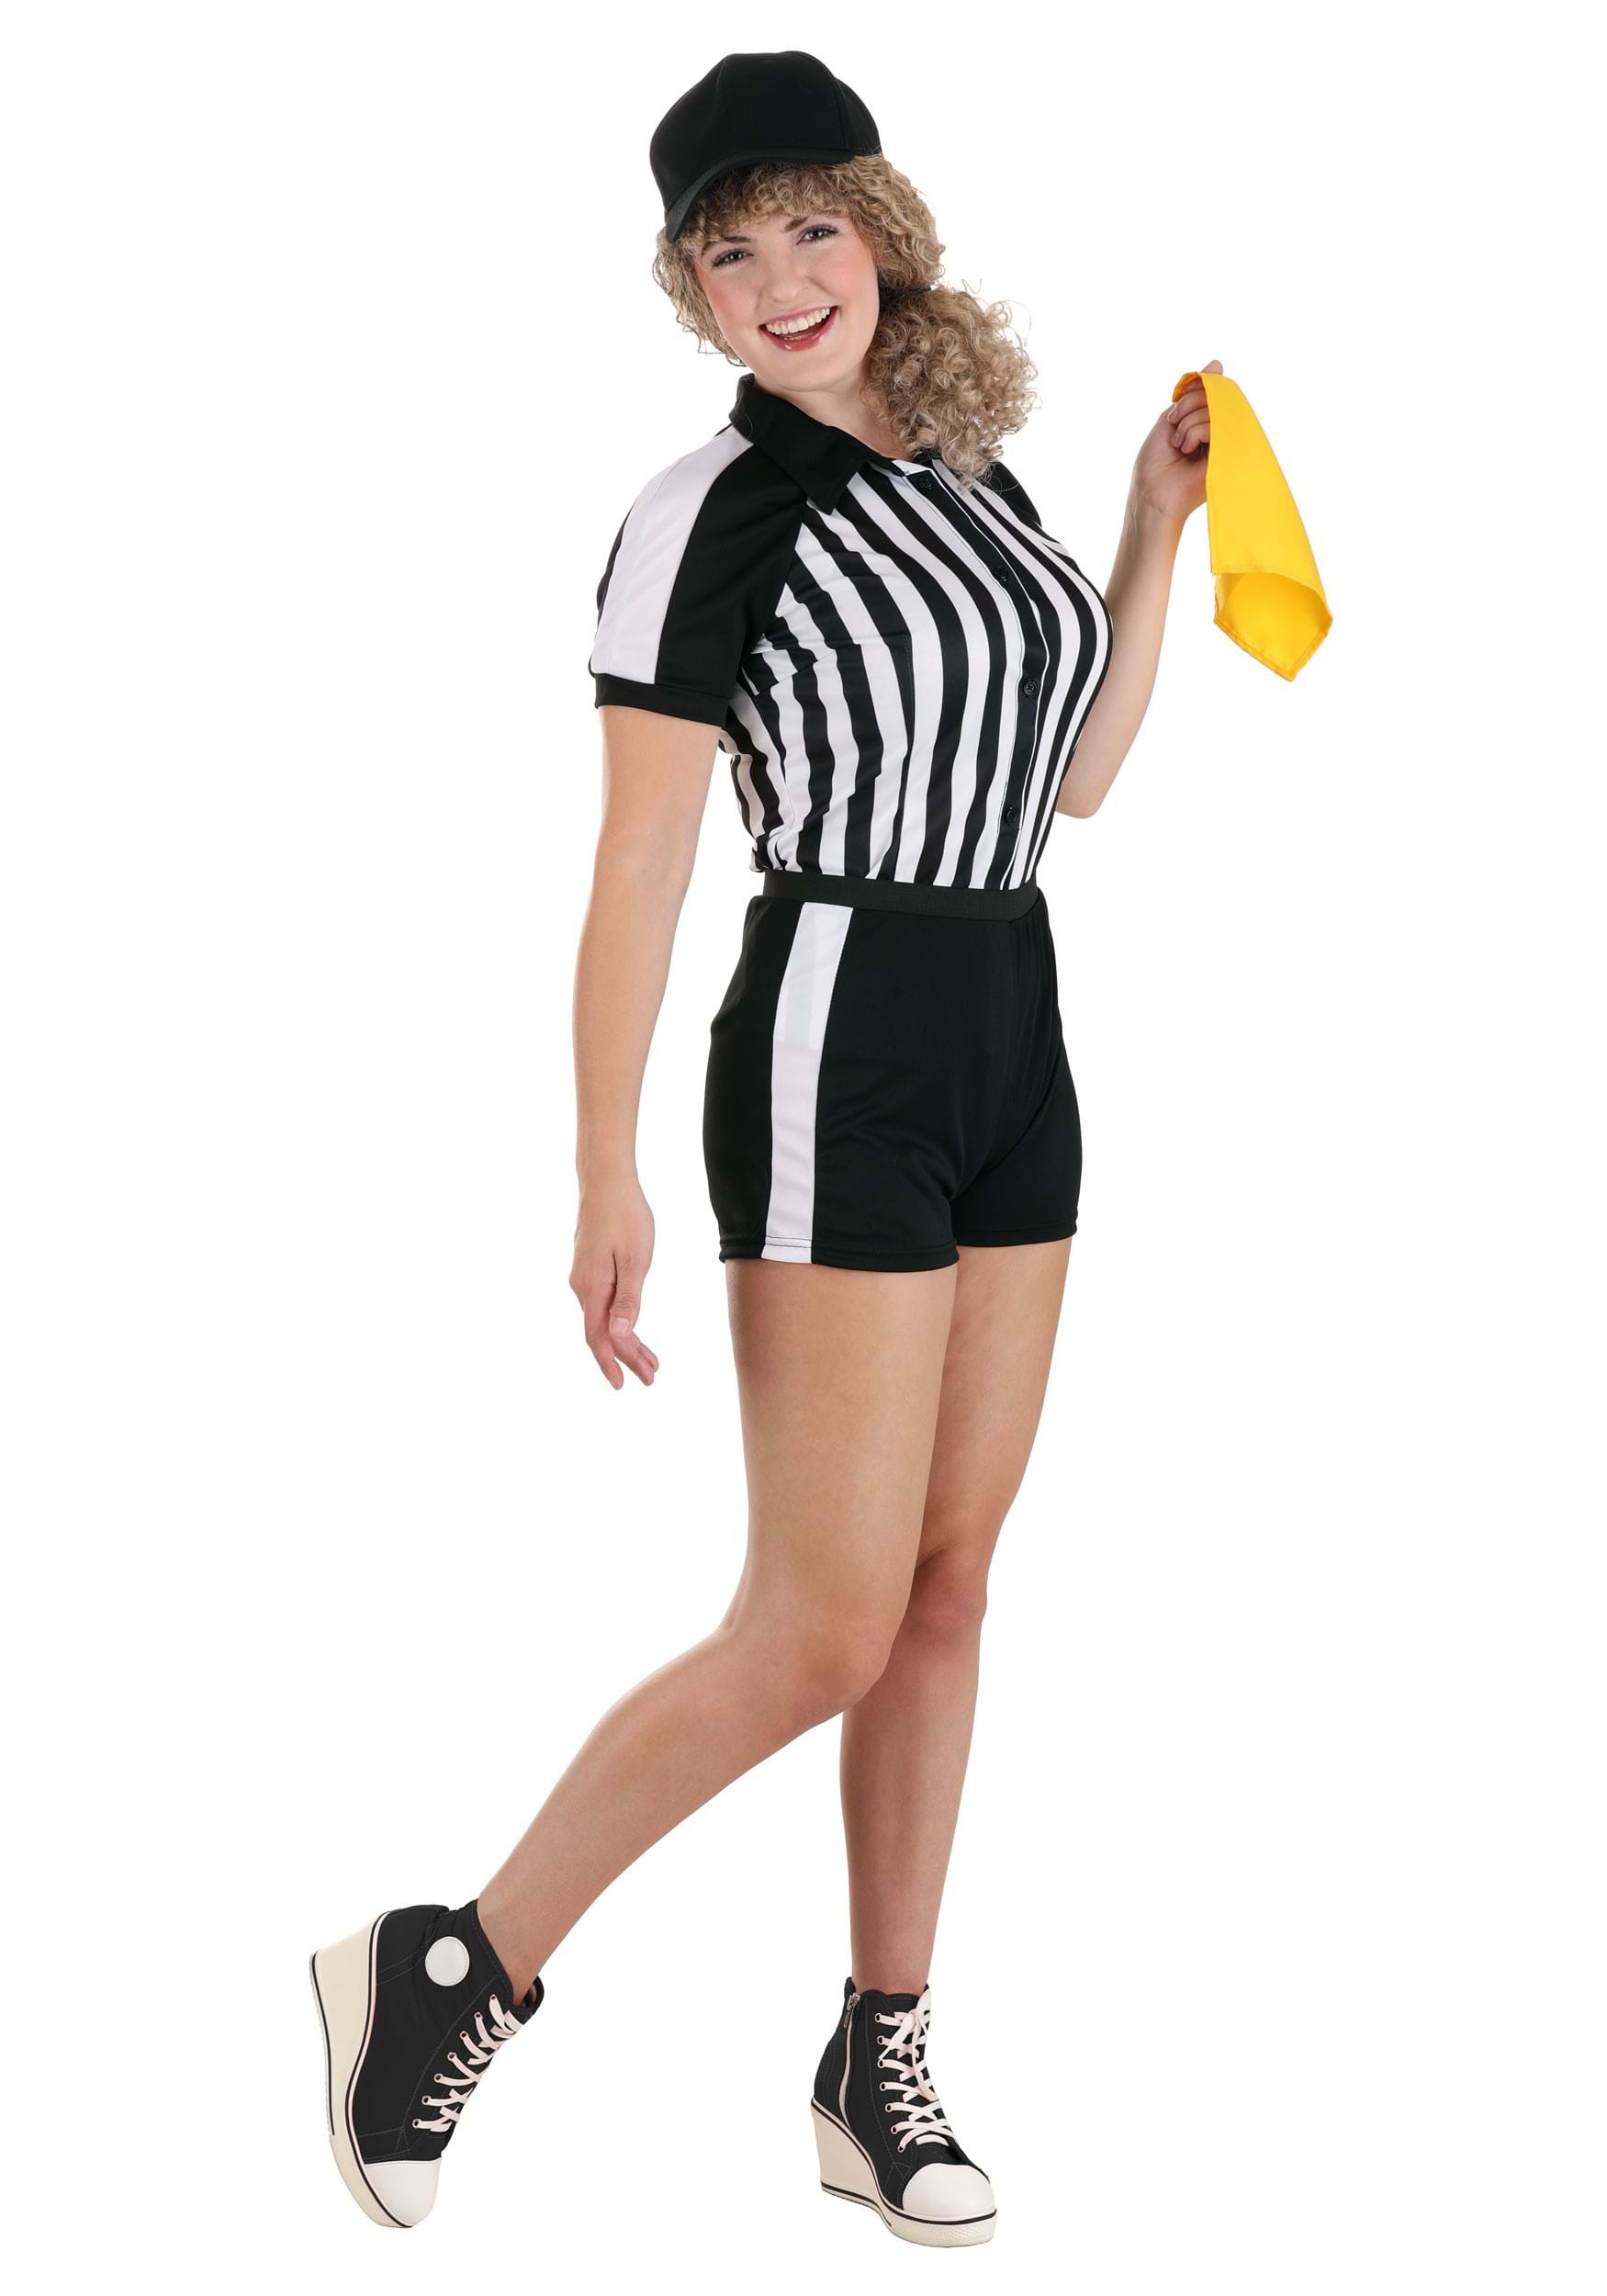 Racy Referee Women's Fancy Dress Costume